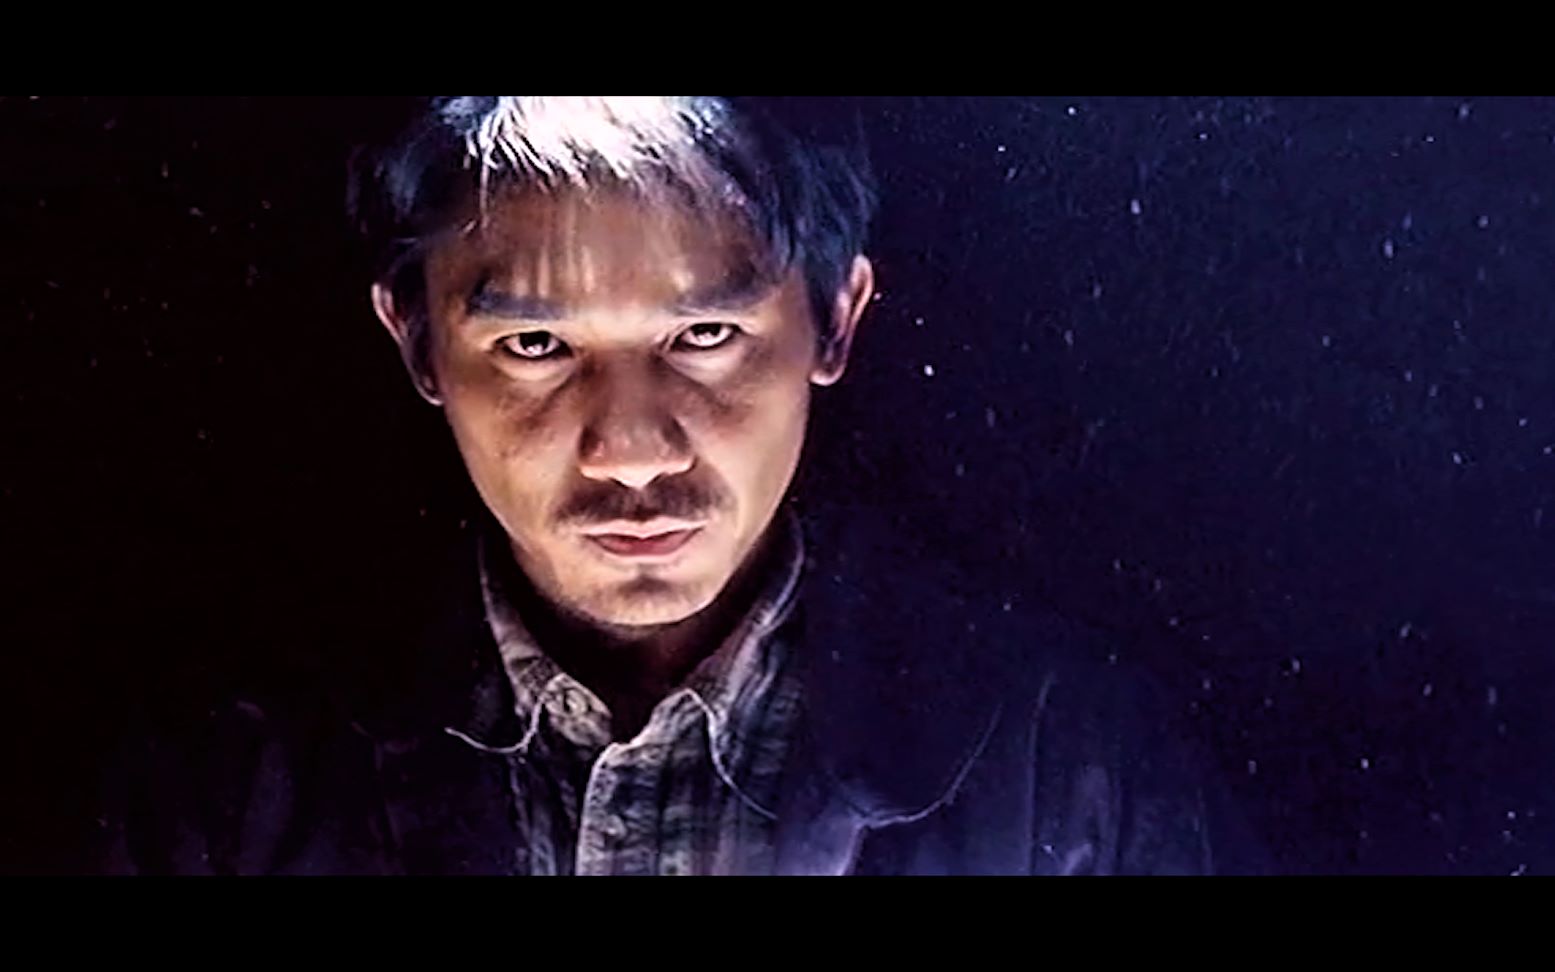 《暗花》一部经典的香港黑帮电影,性格与命运的博弈里,每个人都是棋子